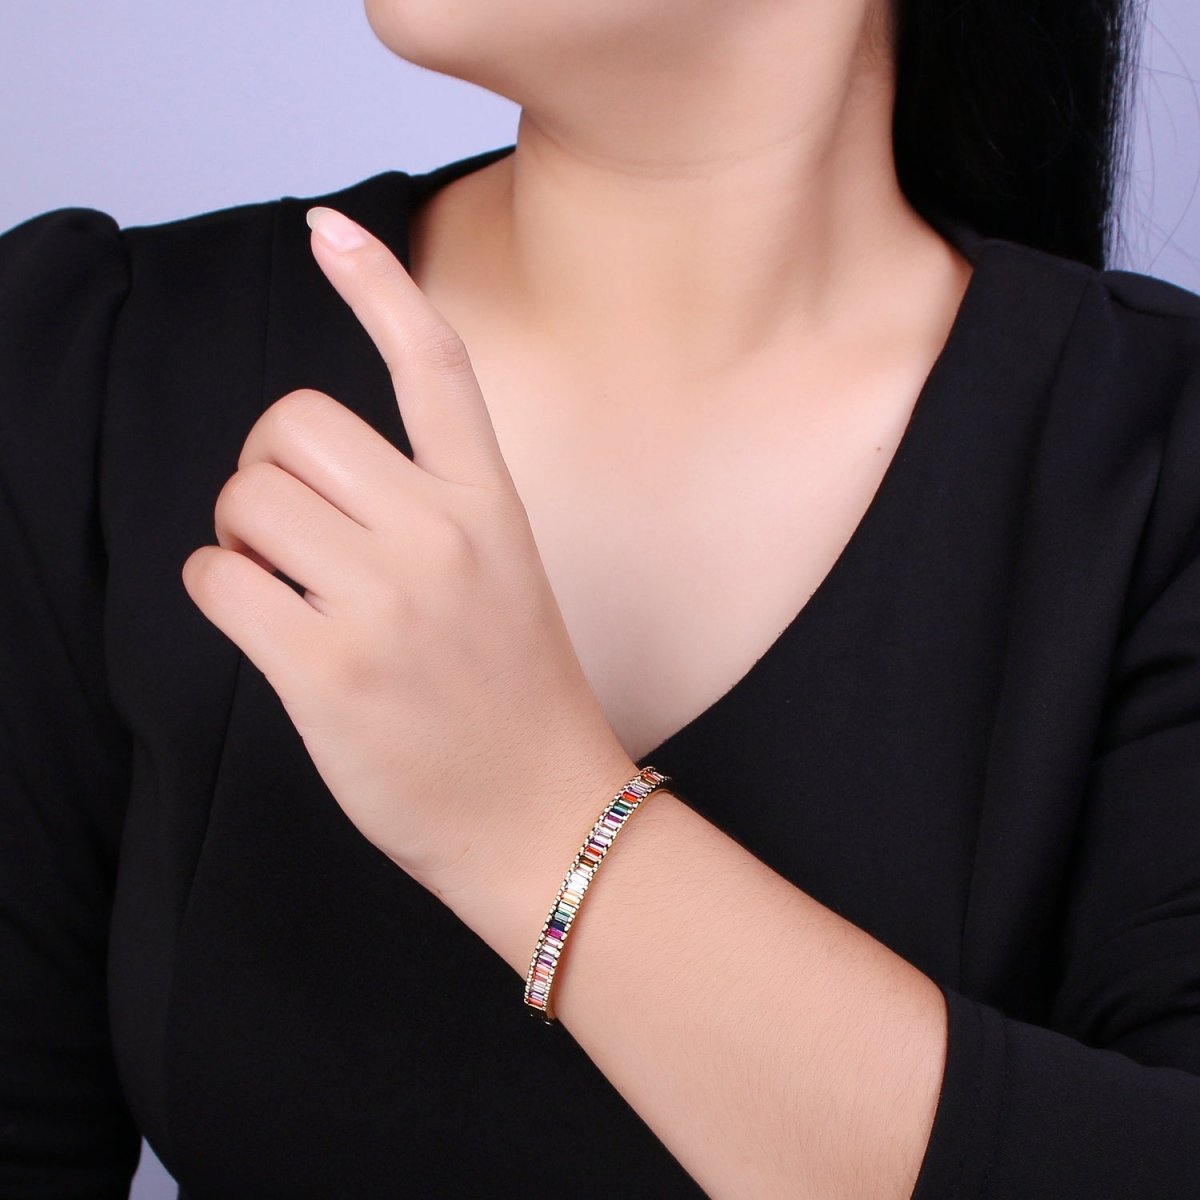 Baguette bracelet Rainbow CZ Gem Stackable Gold Bracelet | Chunky Gold Bracelet | Luxury Crystal Stacking Bangle Bracelet | WA-427 Clearance Pricing - DLUXCA